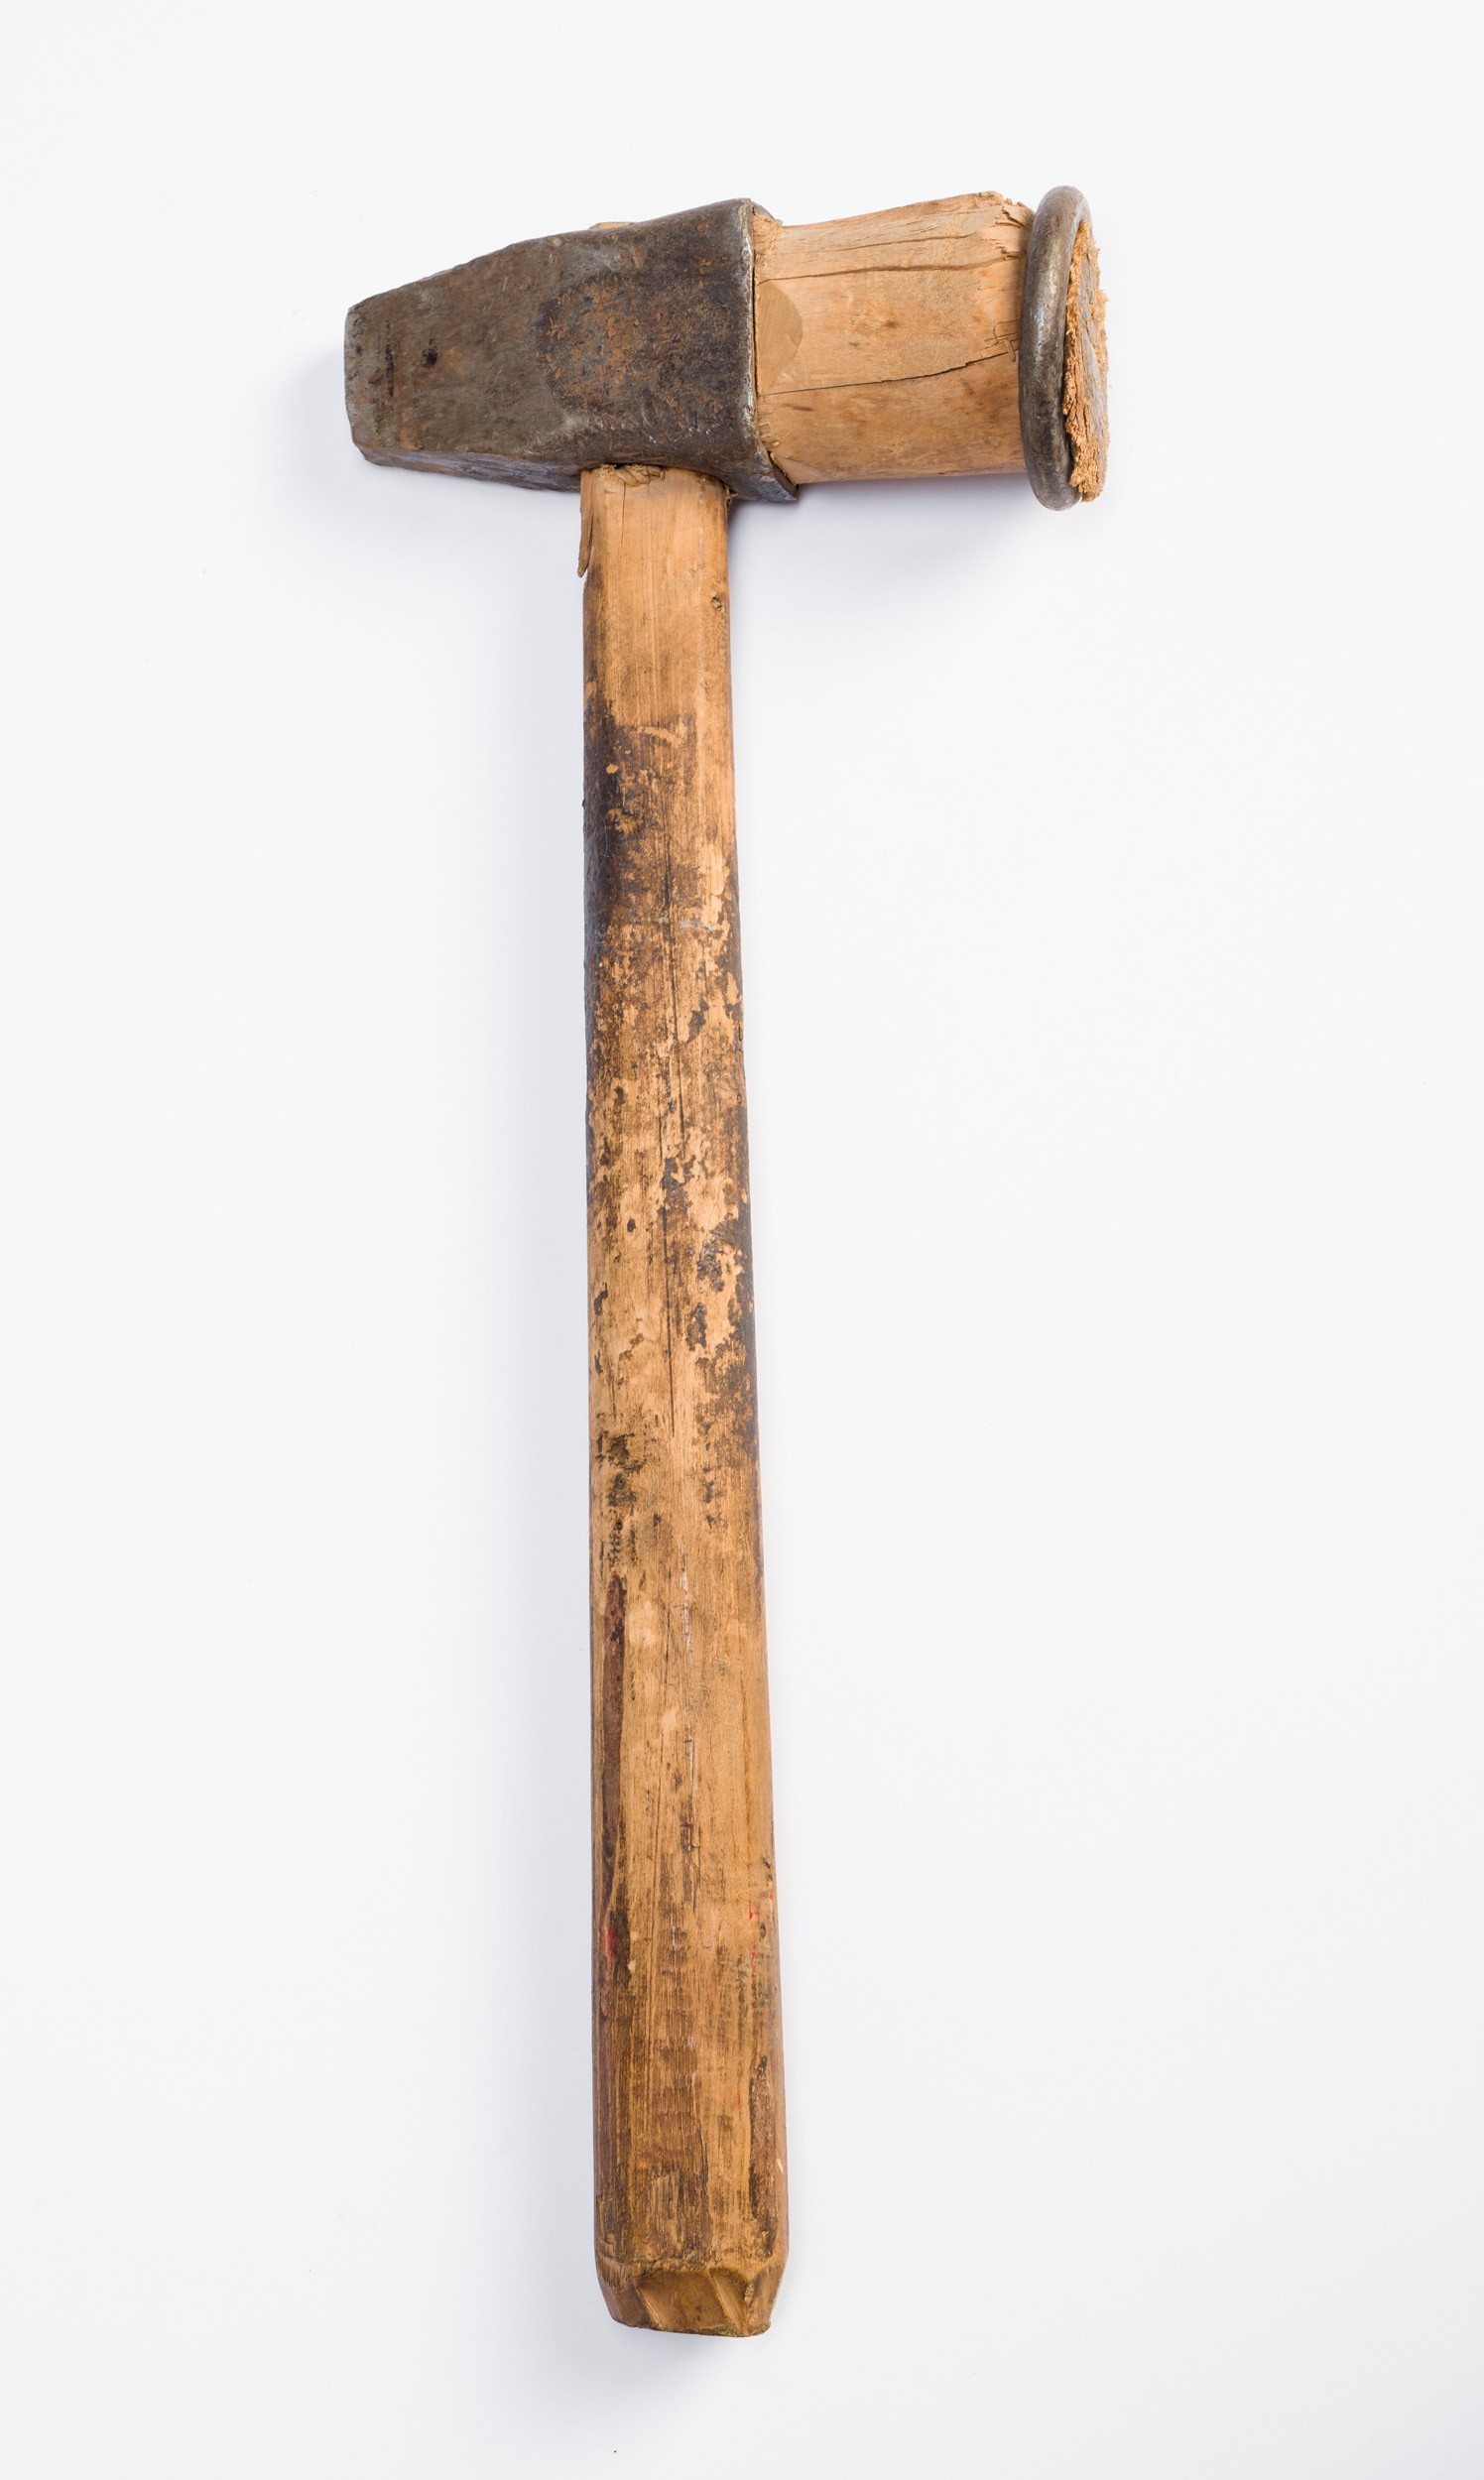 Abroncshúzó kalapács nyéllel (Söripari Emléktár - Dreher Sörmúzeum CC BY-NC-SA)